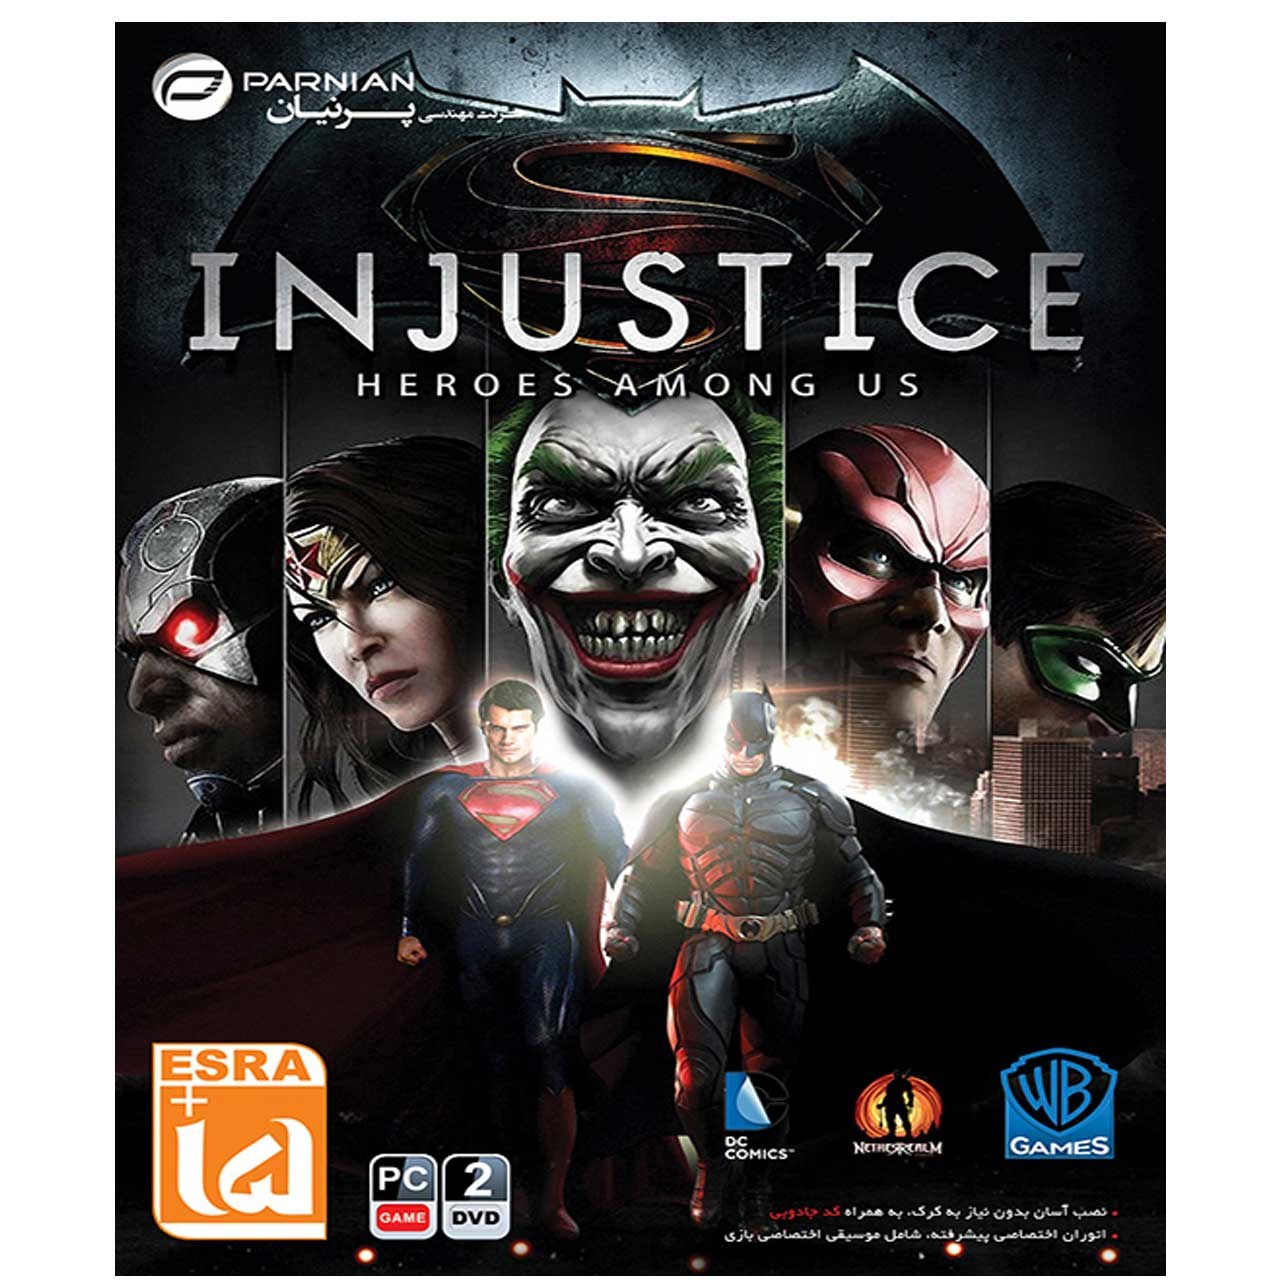 آنباکس بازی Injustice Heroes Among Us مخصوص Pc توسط طاها شایان در تاریخ ۰۲ آبان ۱۳۹۹